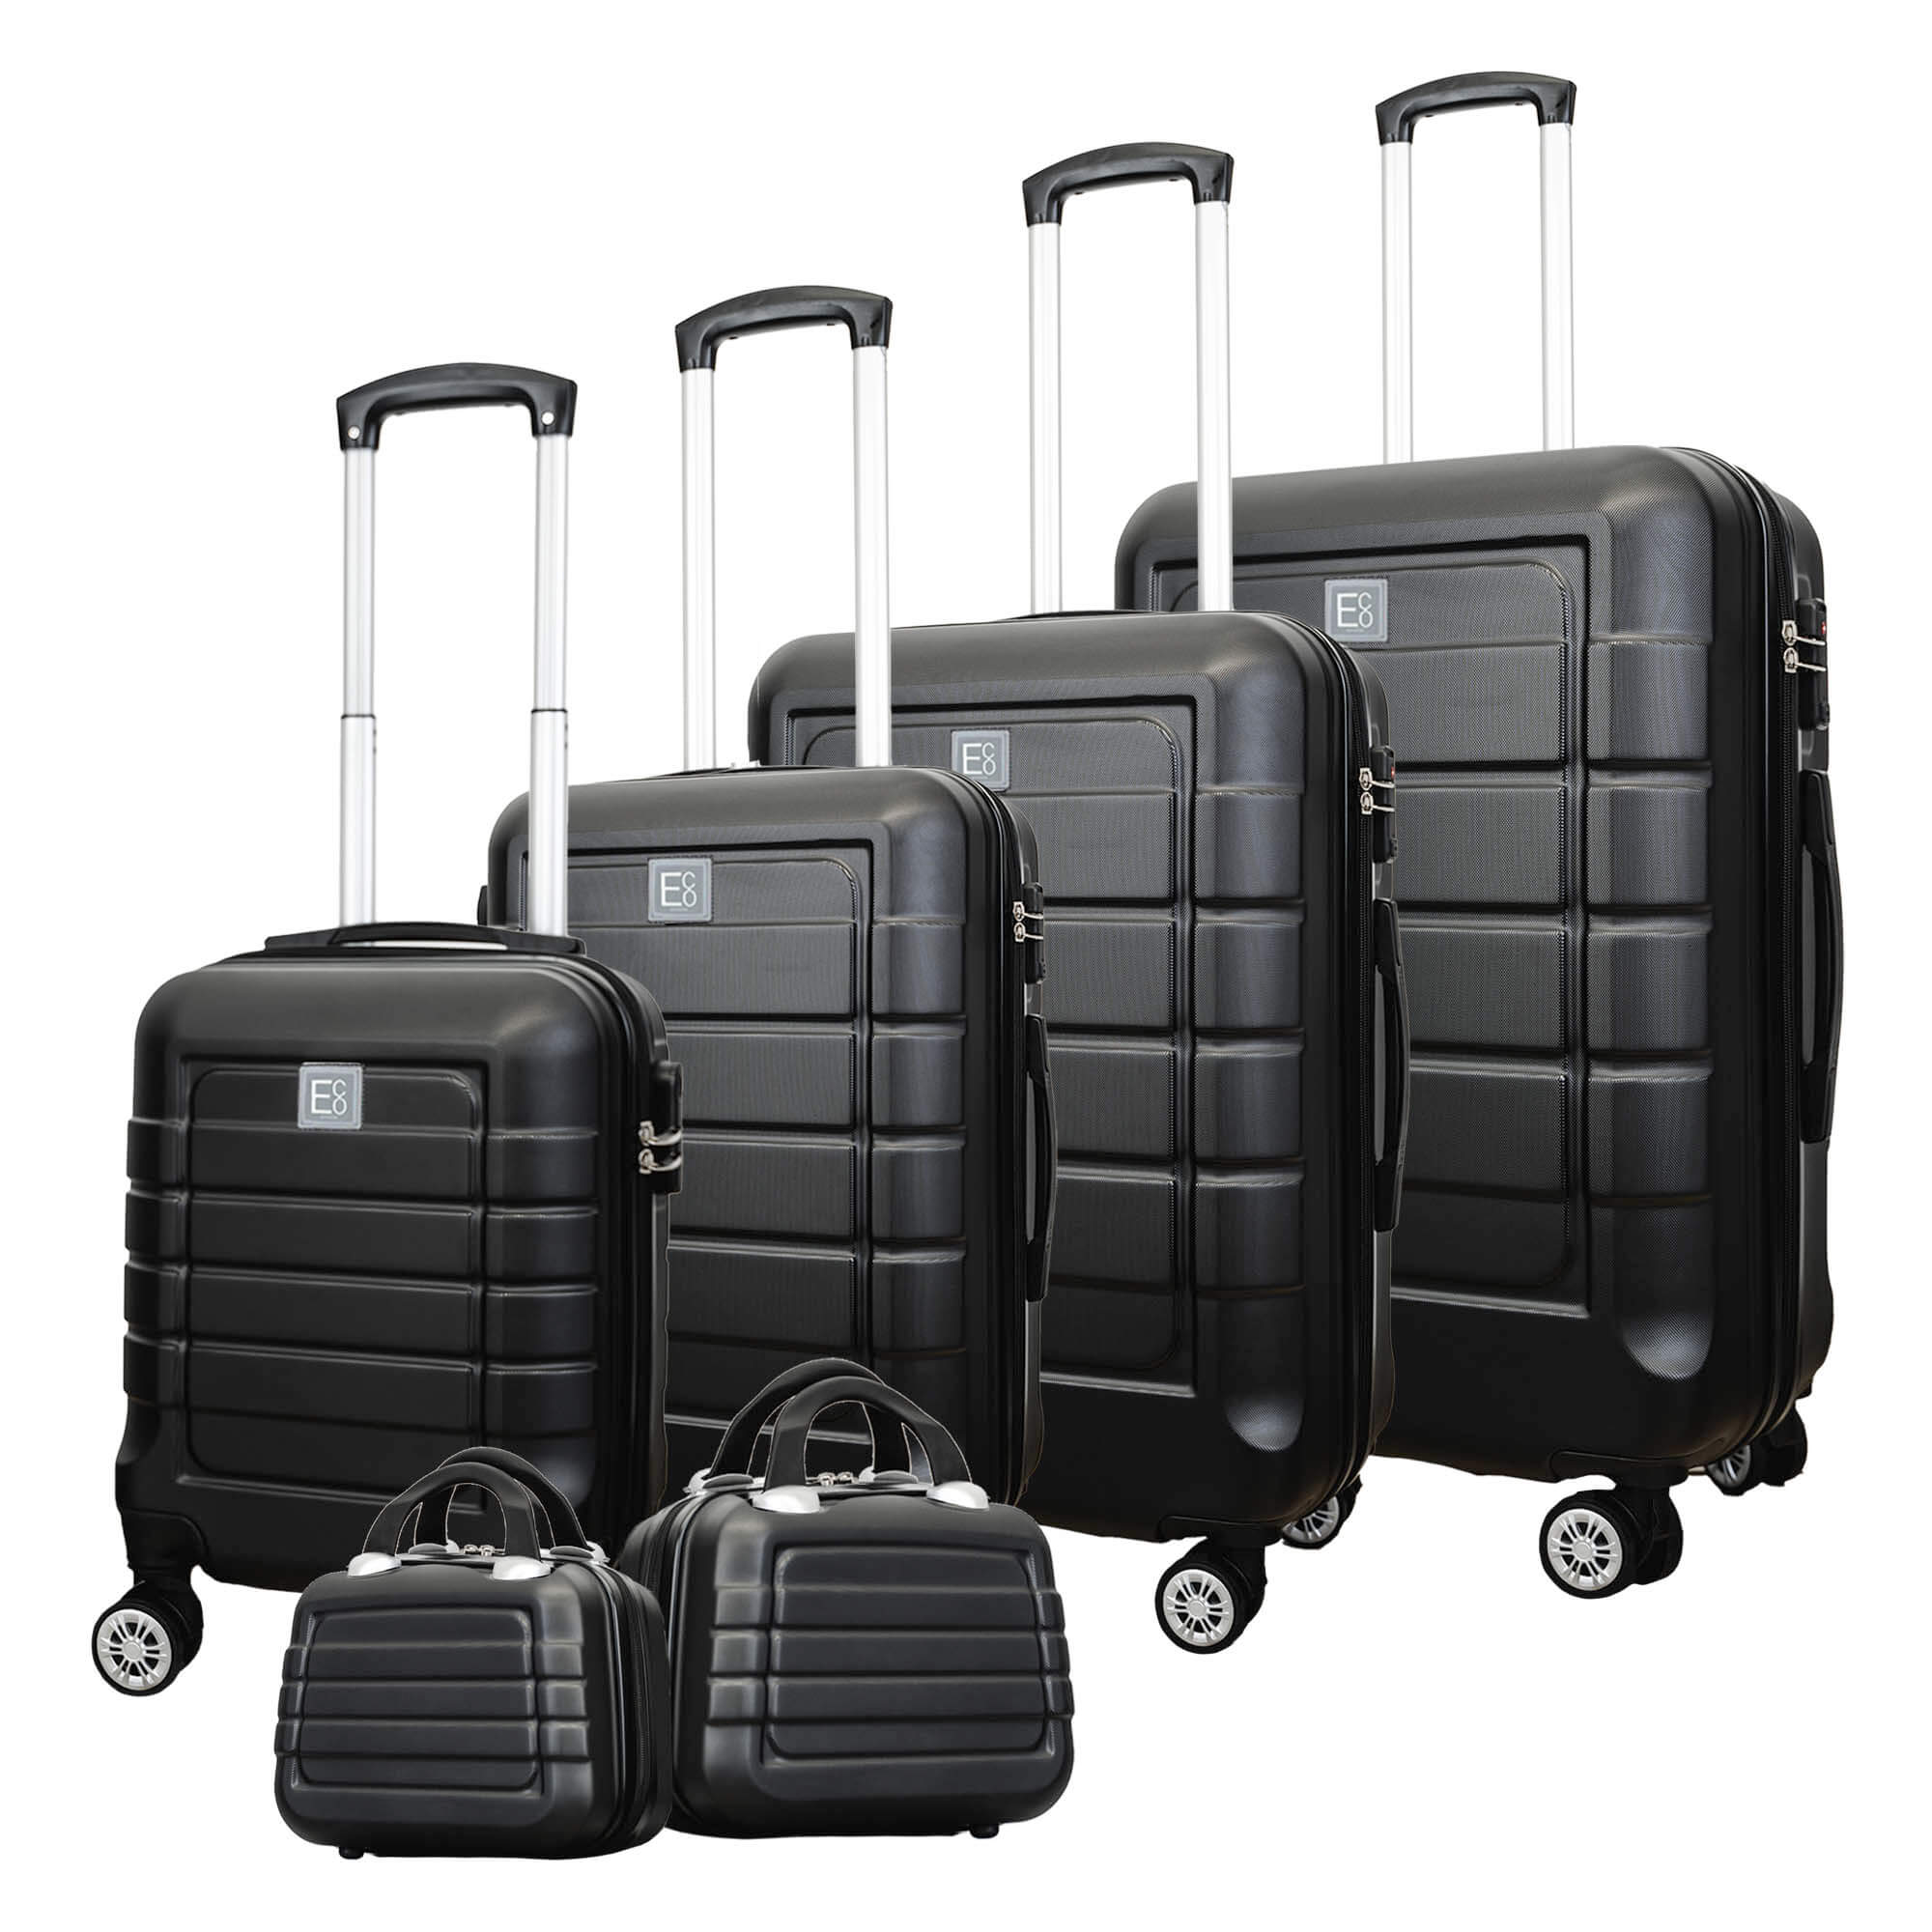 Vorbestellung des Milan Luggage-Koffers mit Hartschale auf 360°-Rollen mit Kosmetiktaschen – in Kürze erhältlich